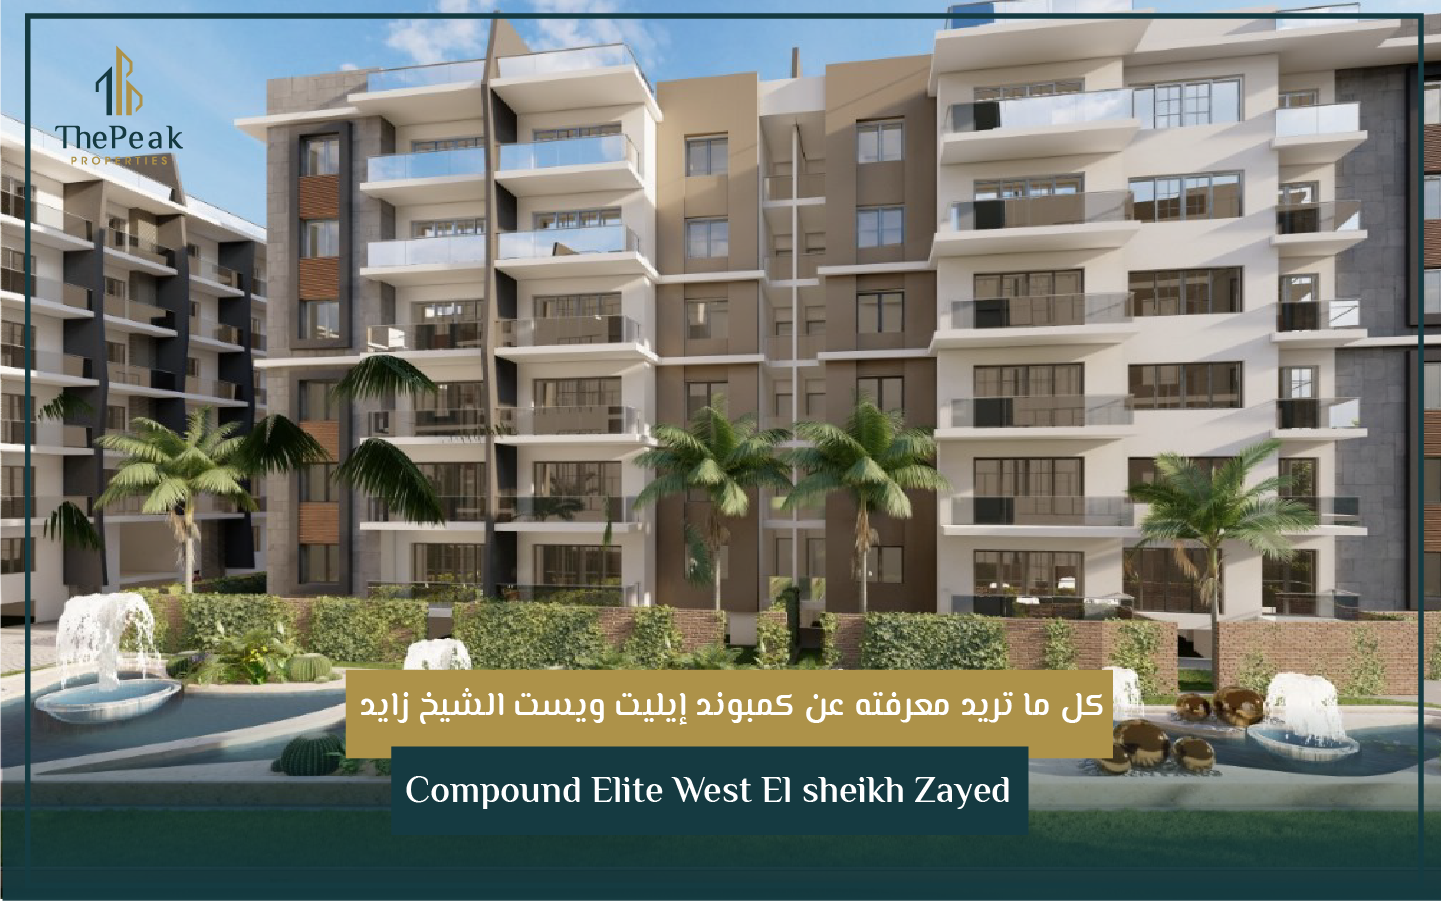 "شقة للبيع بالتقسيط  في الشيخ زايد  مساحة 164 متر + 35 متر حديقة  مقدم 15 % و تقسيط يصل إلي 8 سنوات  في مشروع Compound Elite West El sheikh Zayed" | THE PEAK PROPERTIES